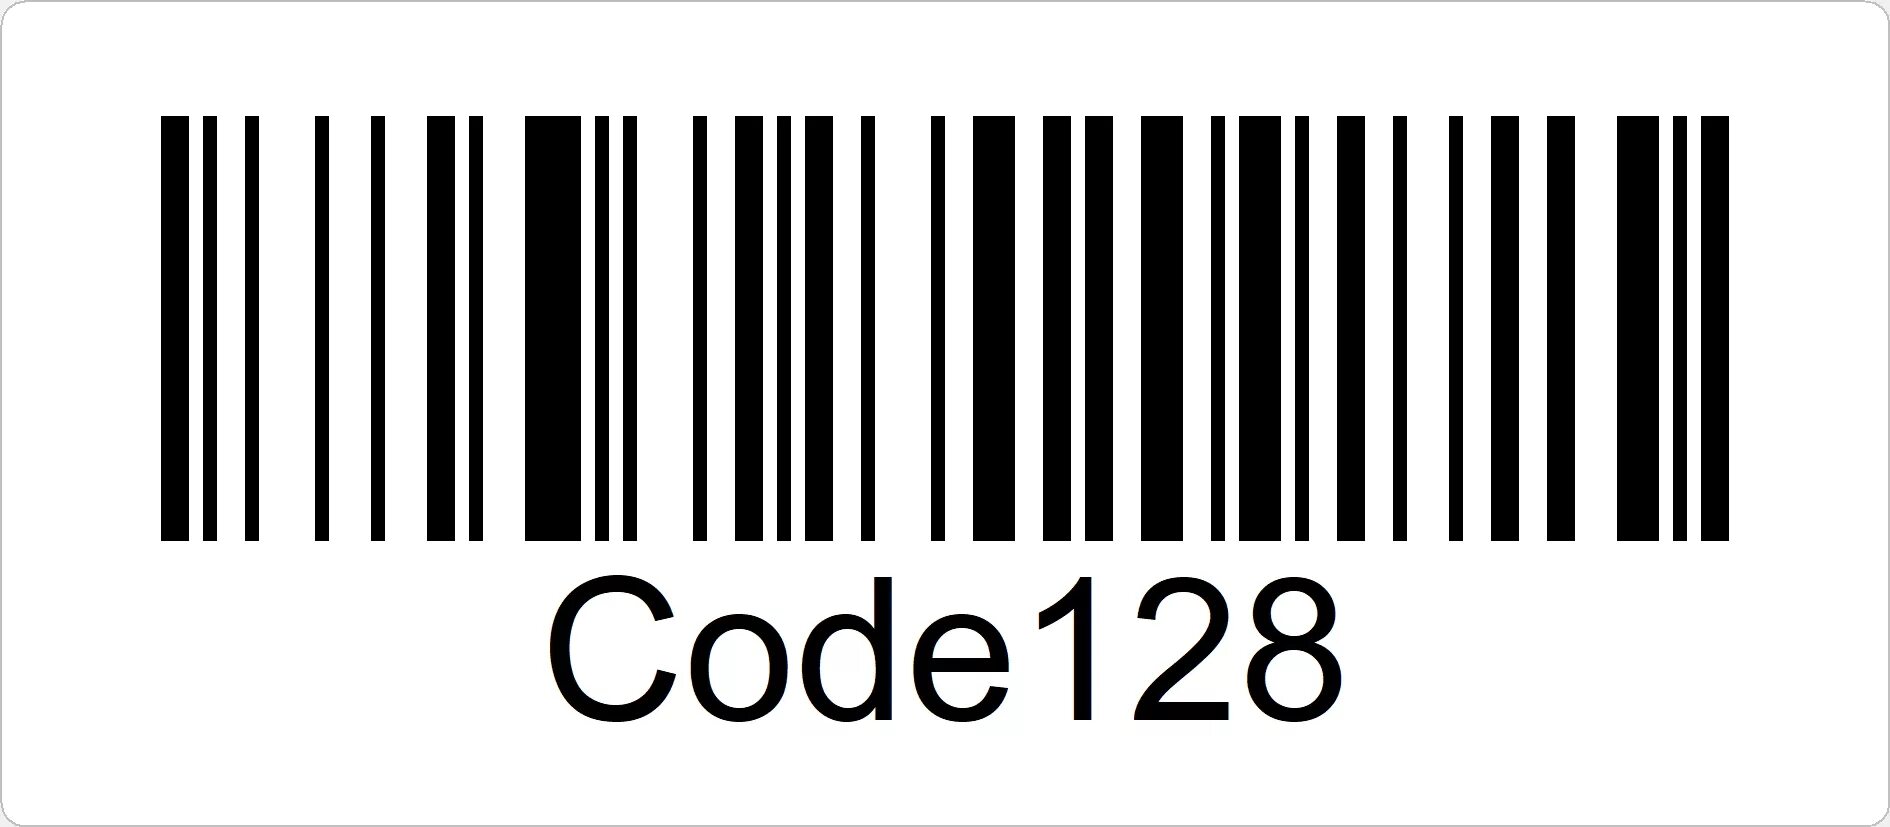 Штриховой код code128. Штрих код Barcode 128. EAN-13 code-128 штрих коды. Code 128 расшифровка.